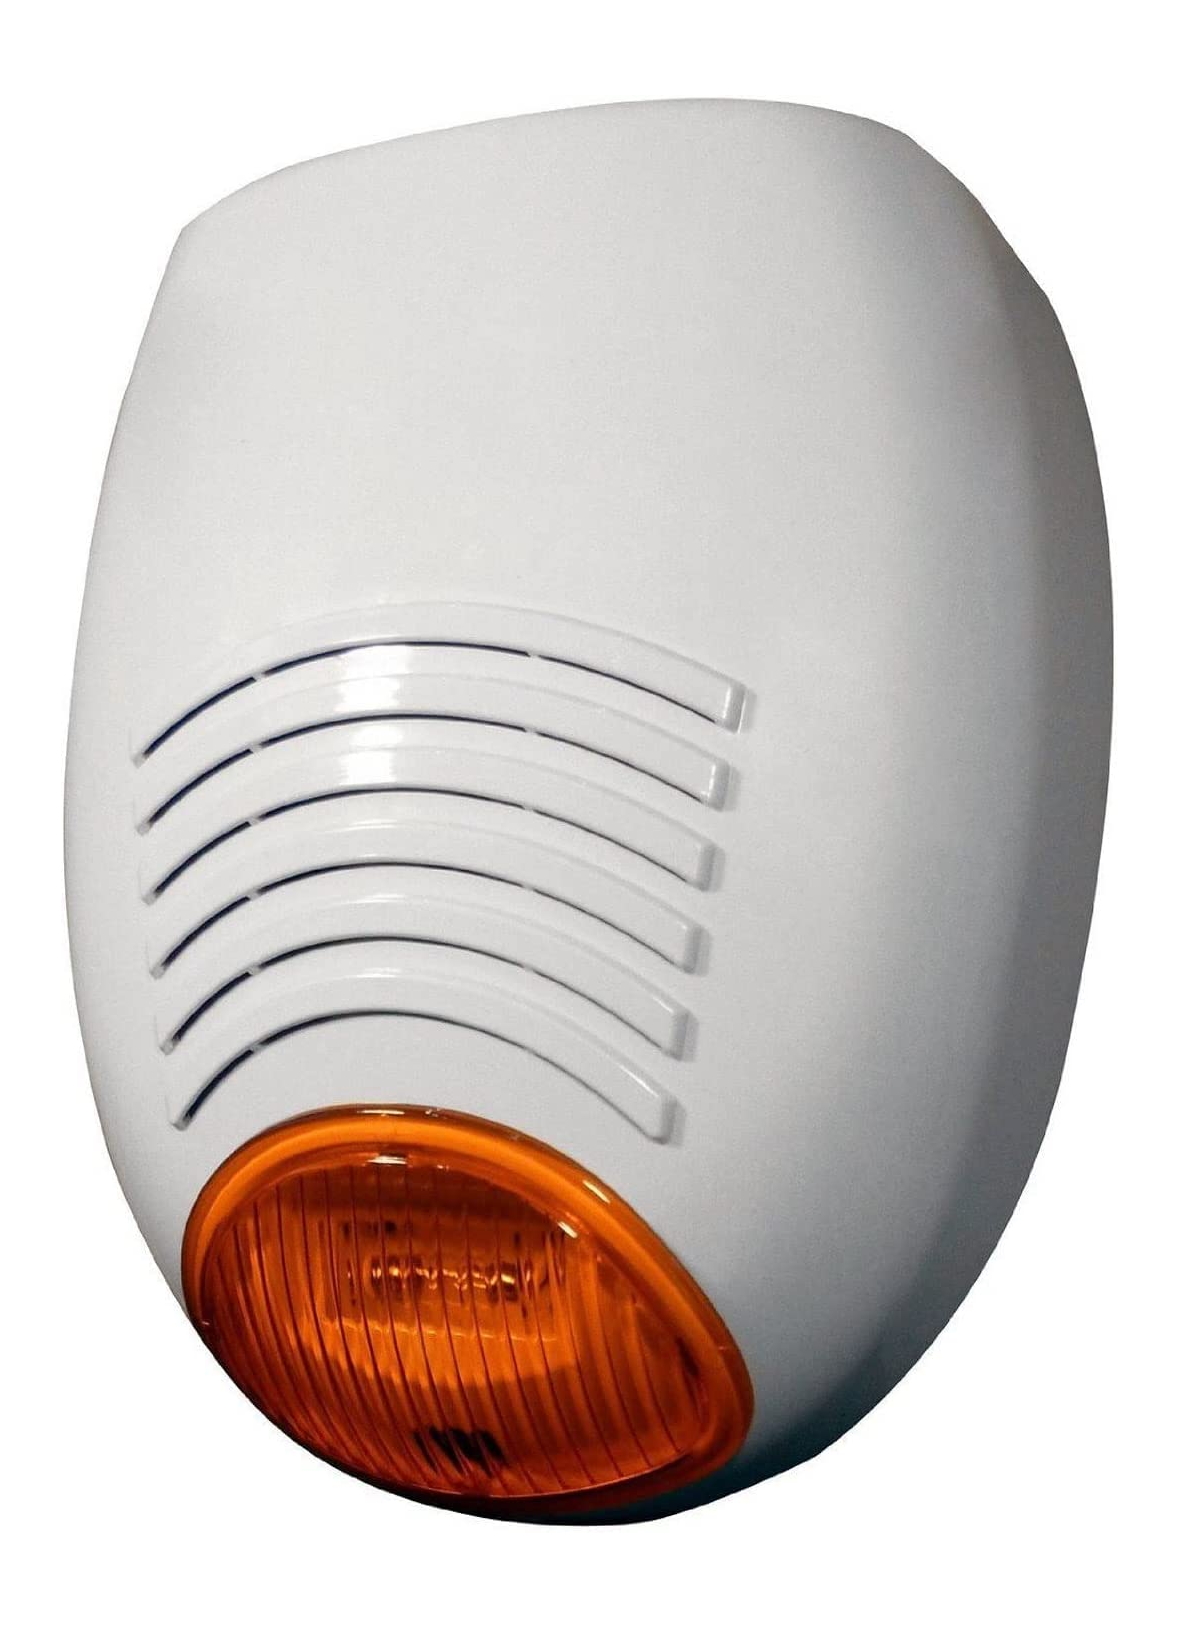 23554 Sirène extérieure autonome avec flash,ABS,blanc